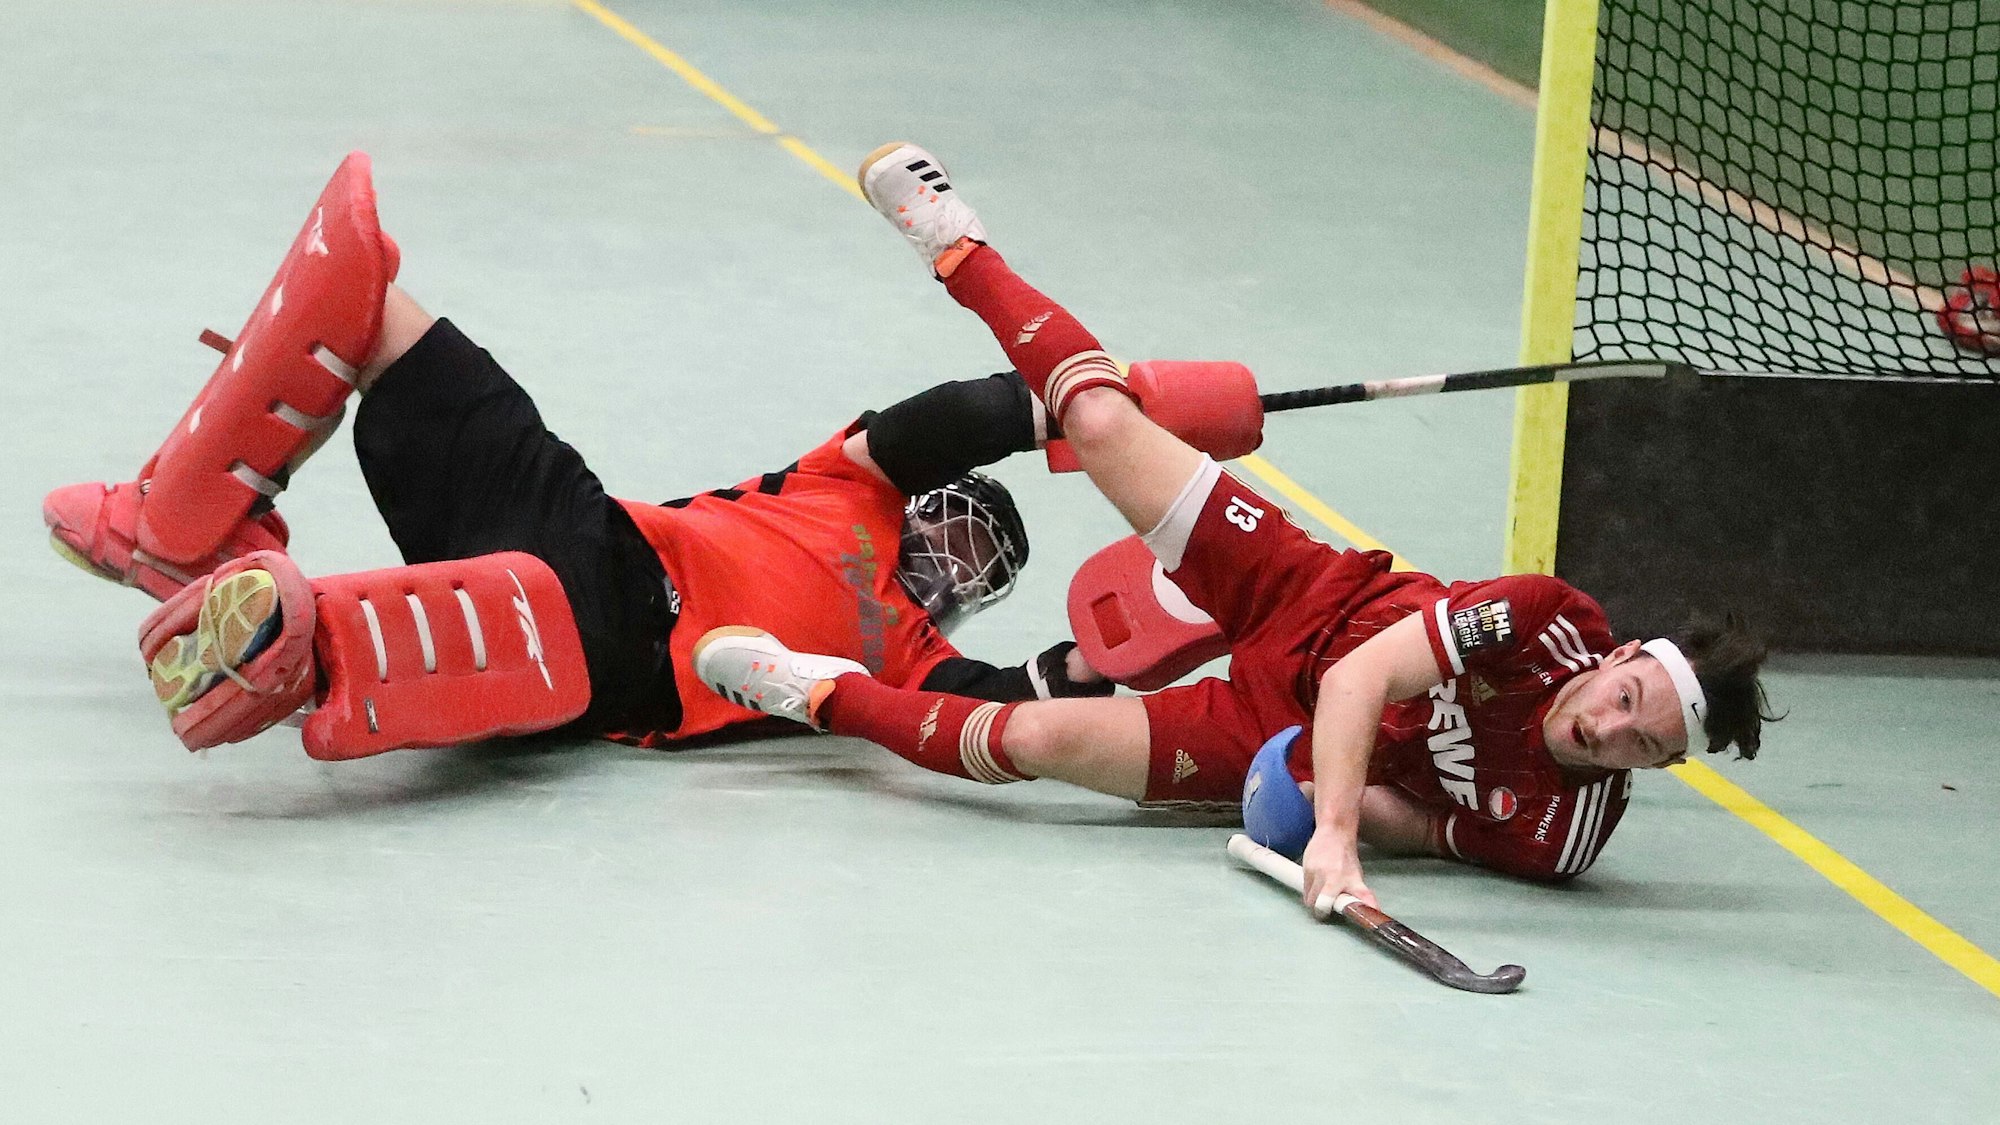 Ein Hockeytorwart und ein Feldspieler liegen am Boden und kämpfen um den Ball.